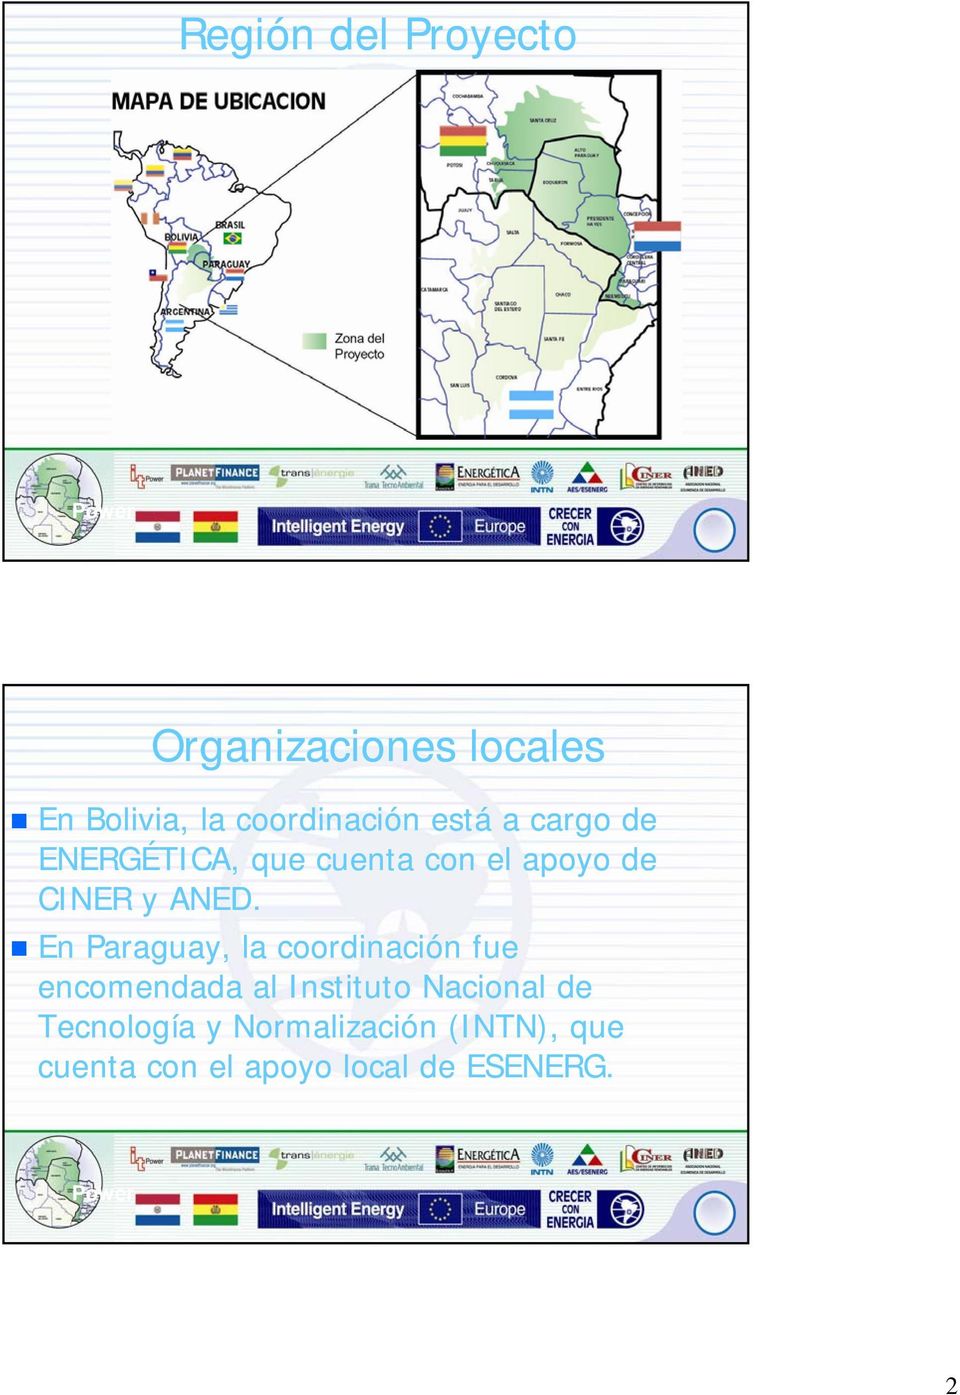 En Paraguay, la coordinación fue encomendada al Instituto Nacional de